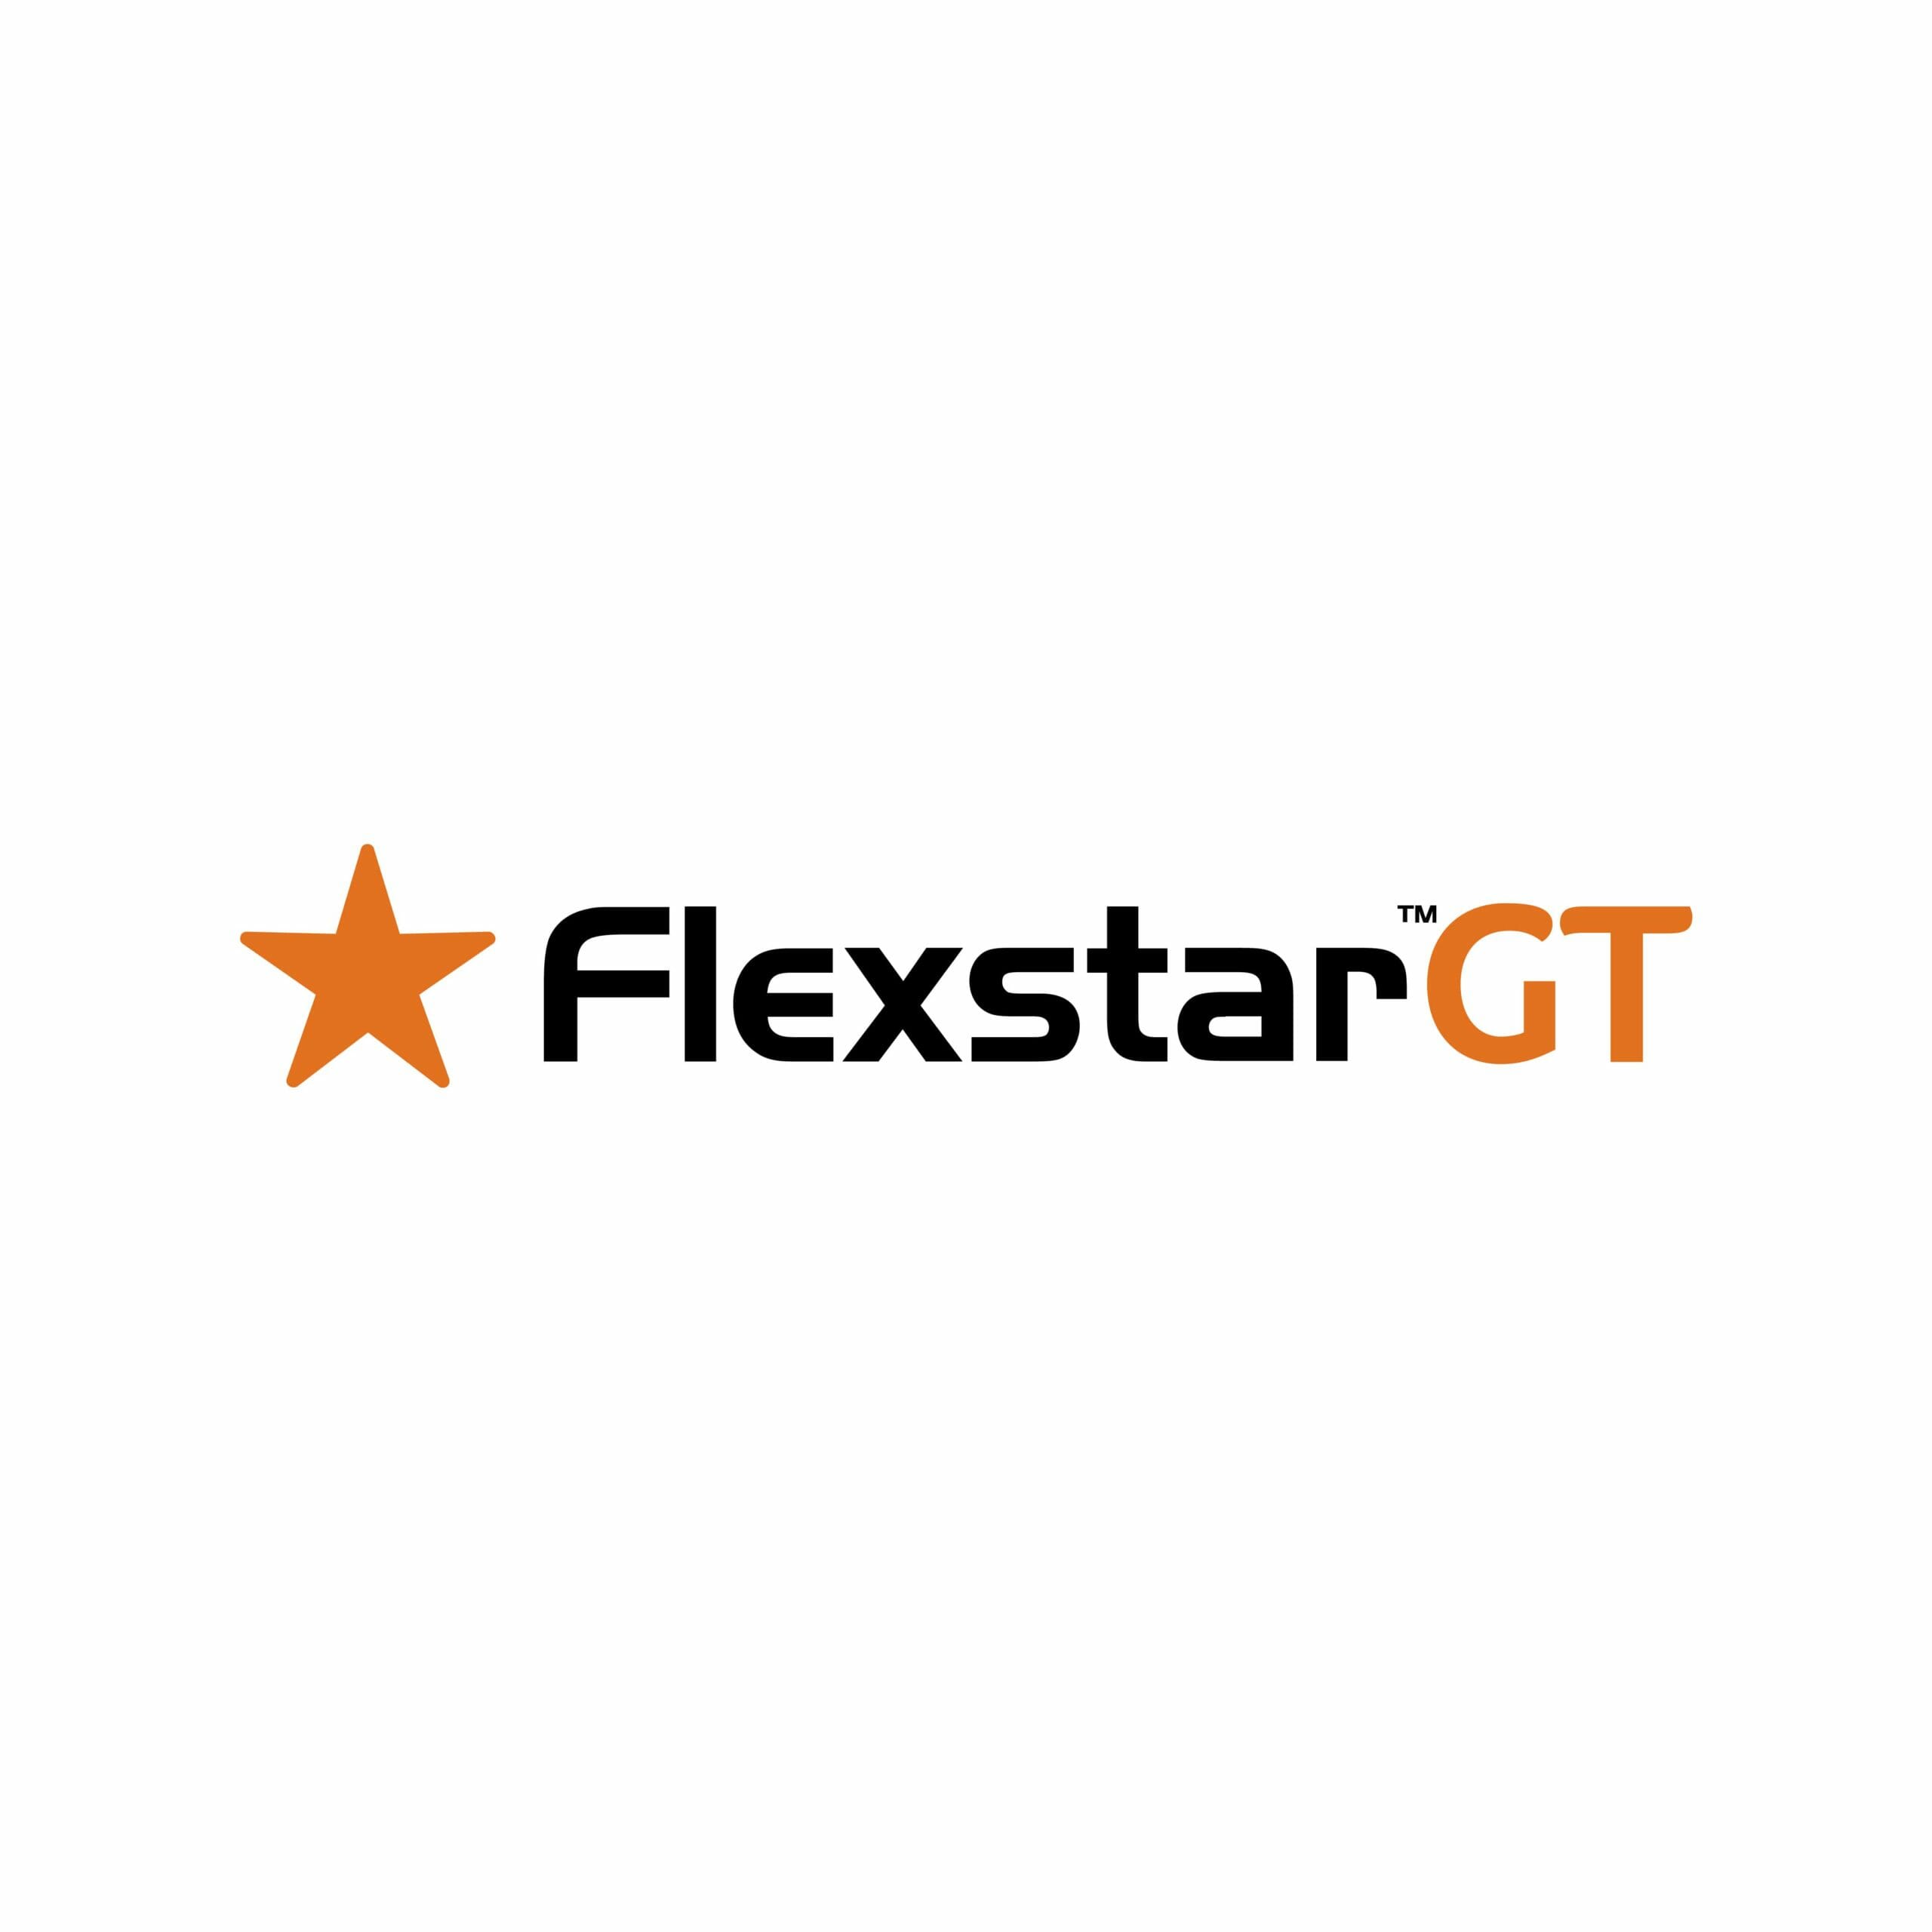 Flexstar GT